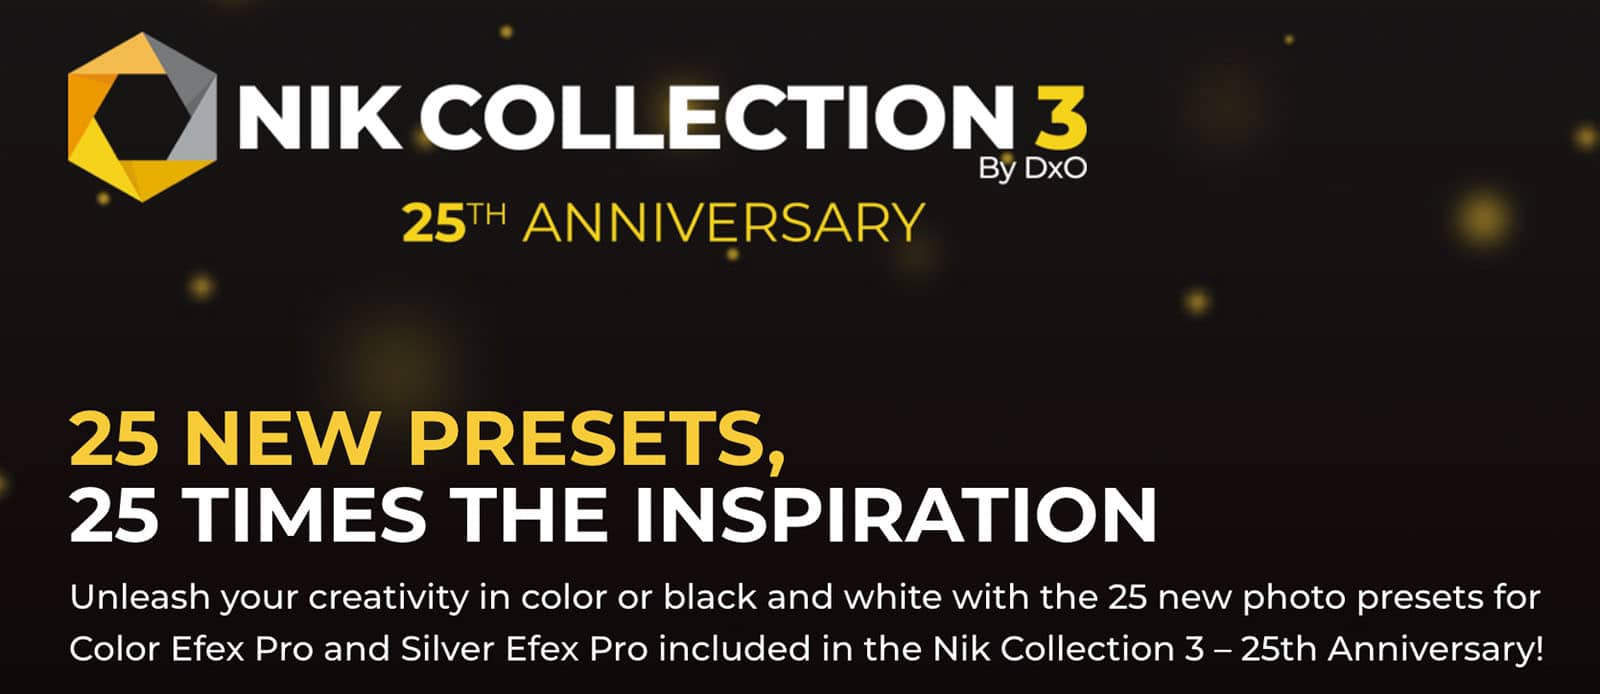 Nik kỷ niệm 25 năm với bộ preset mới trong Nik Collection 3 từ DxO